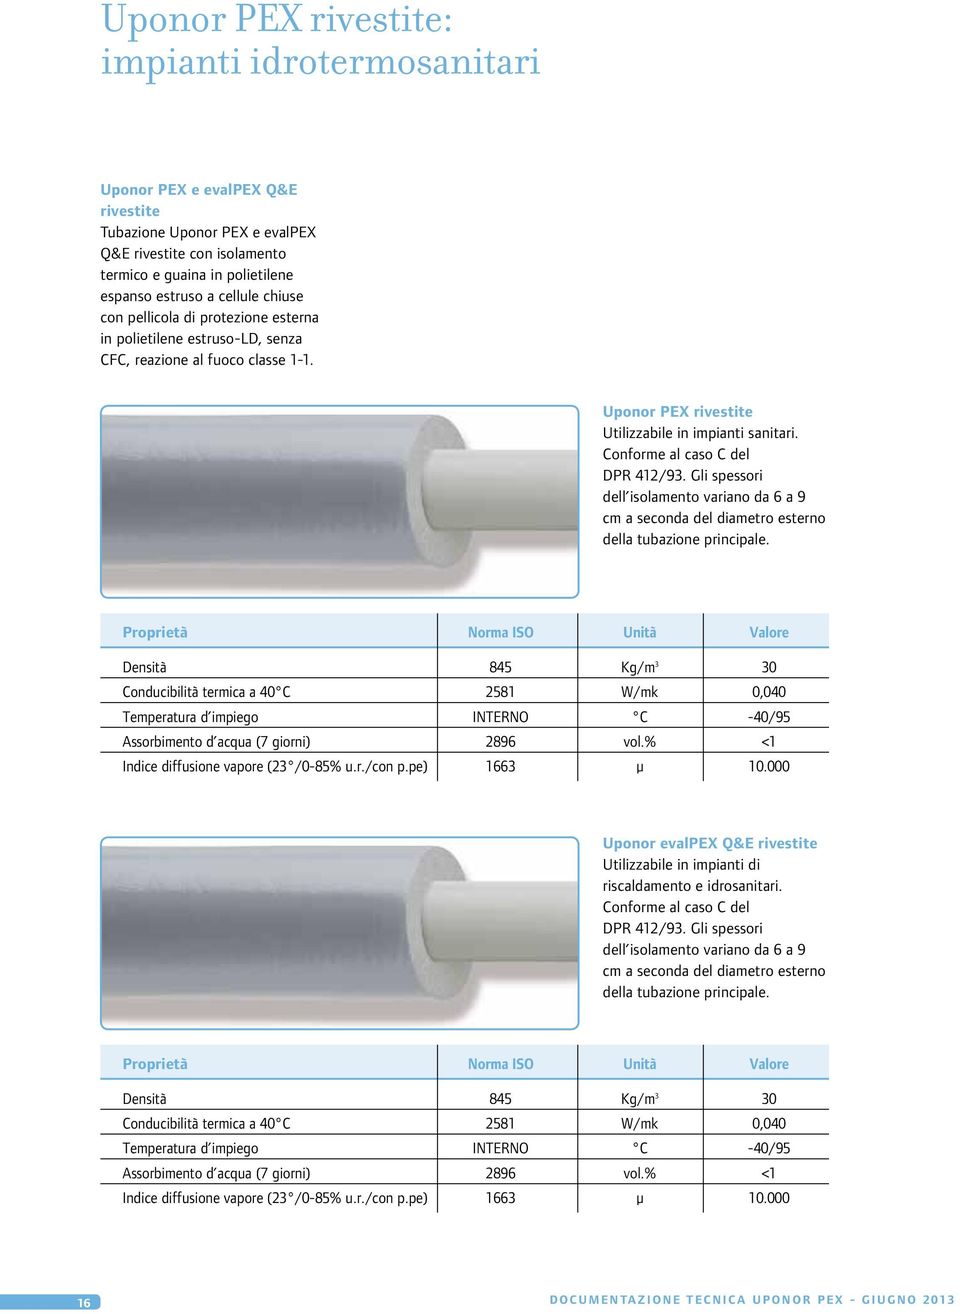 Conforme al caso C del DPR 412/93. Gli spessori dell isolamento variano da 6 a 9 cm a seconda del diametro esterno della tubazione principale.